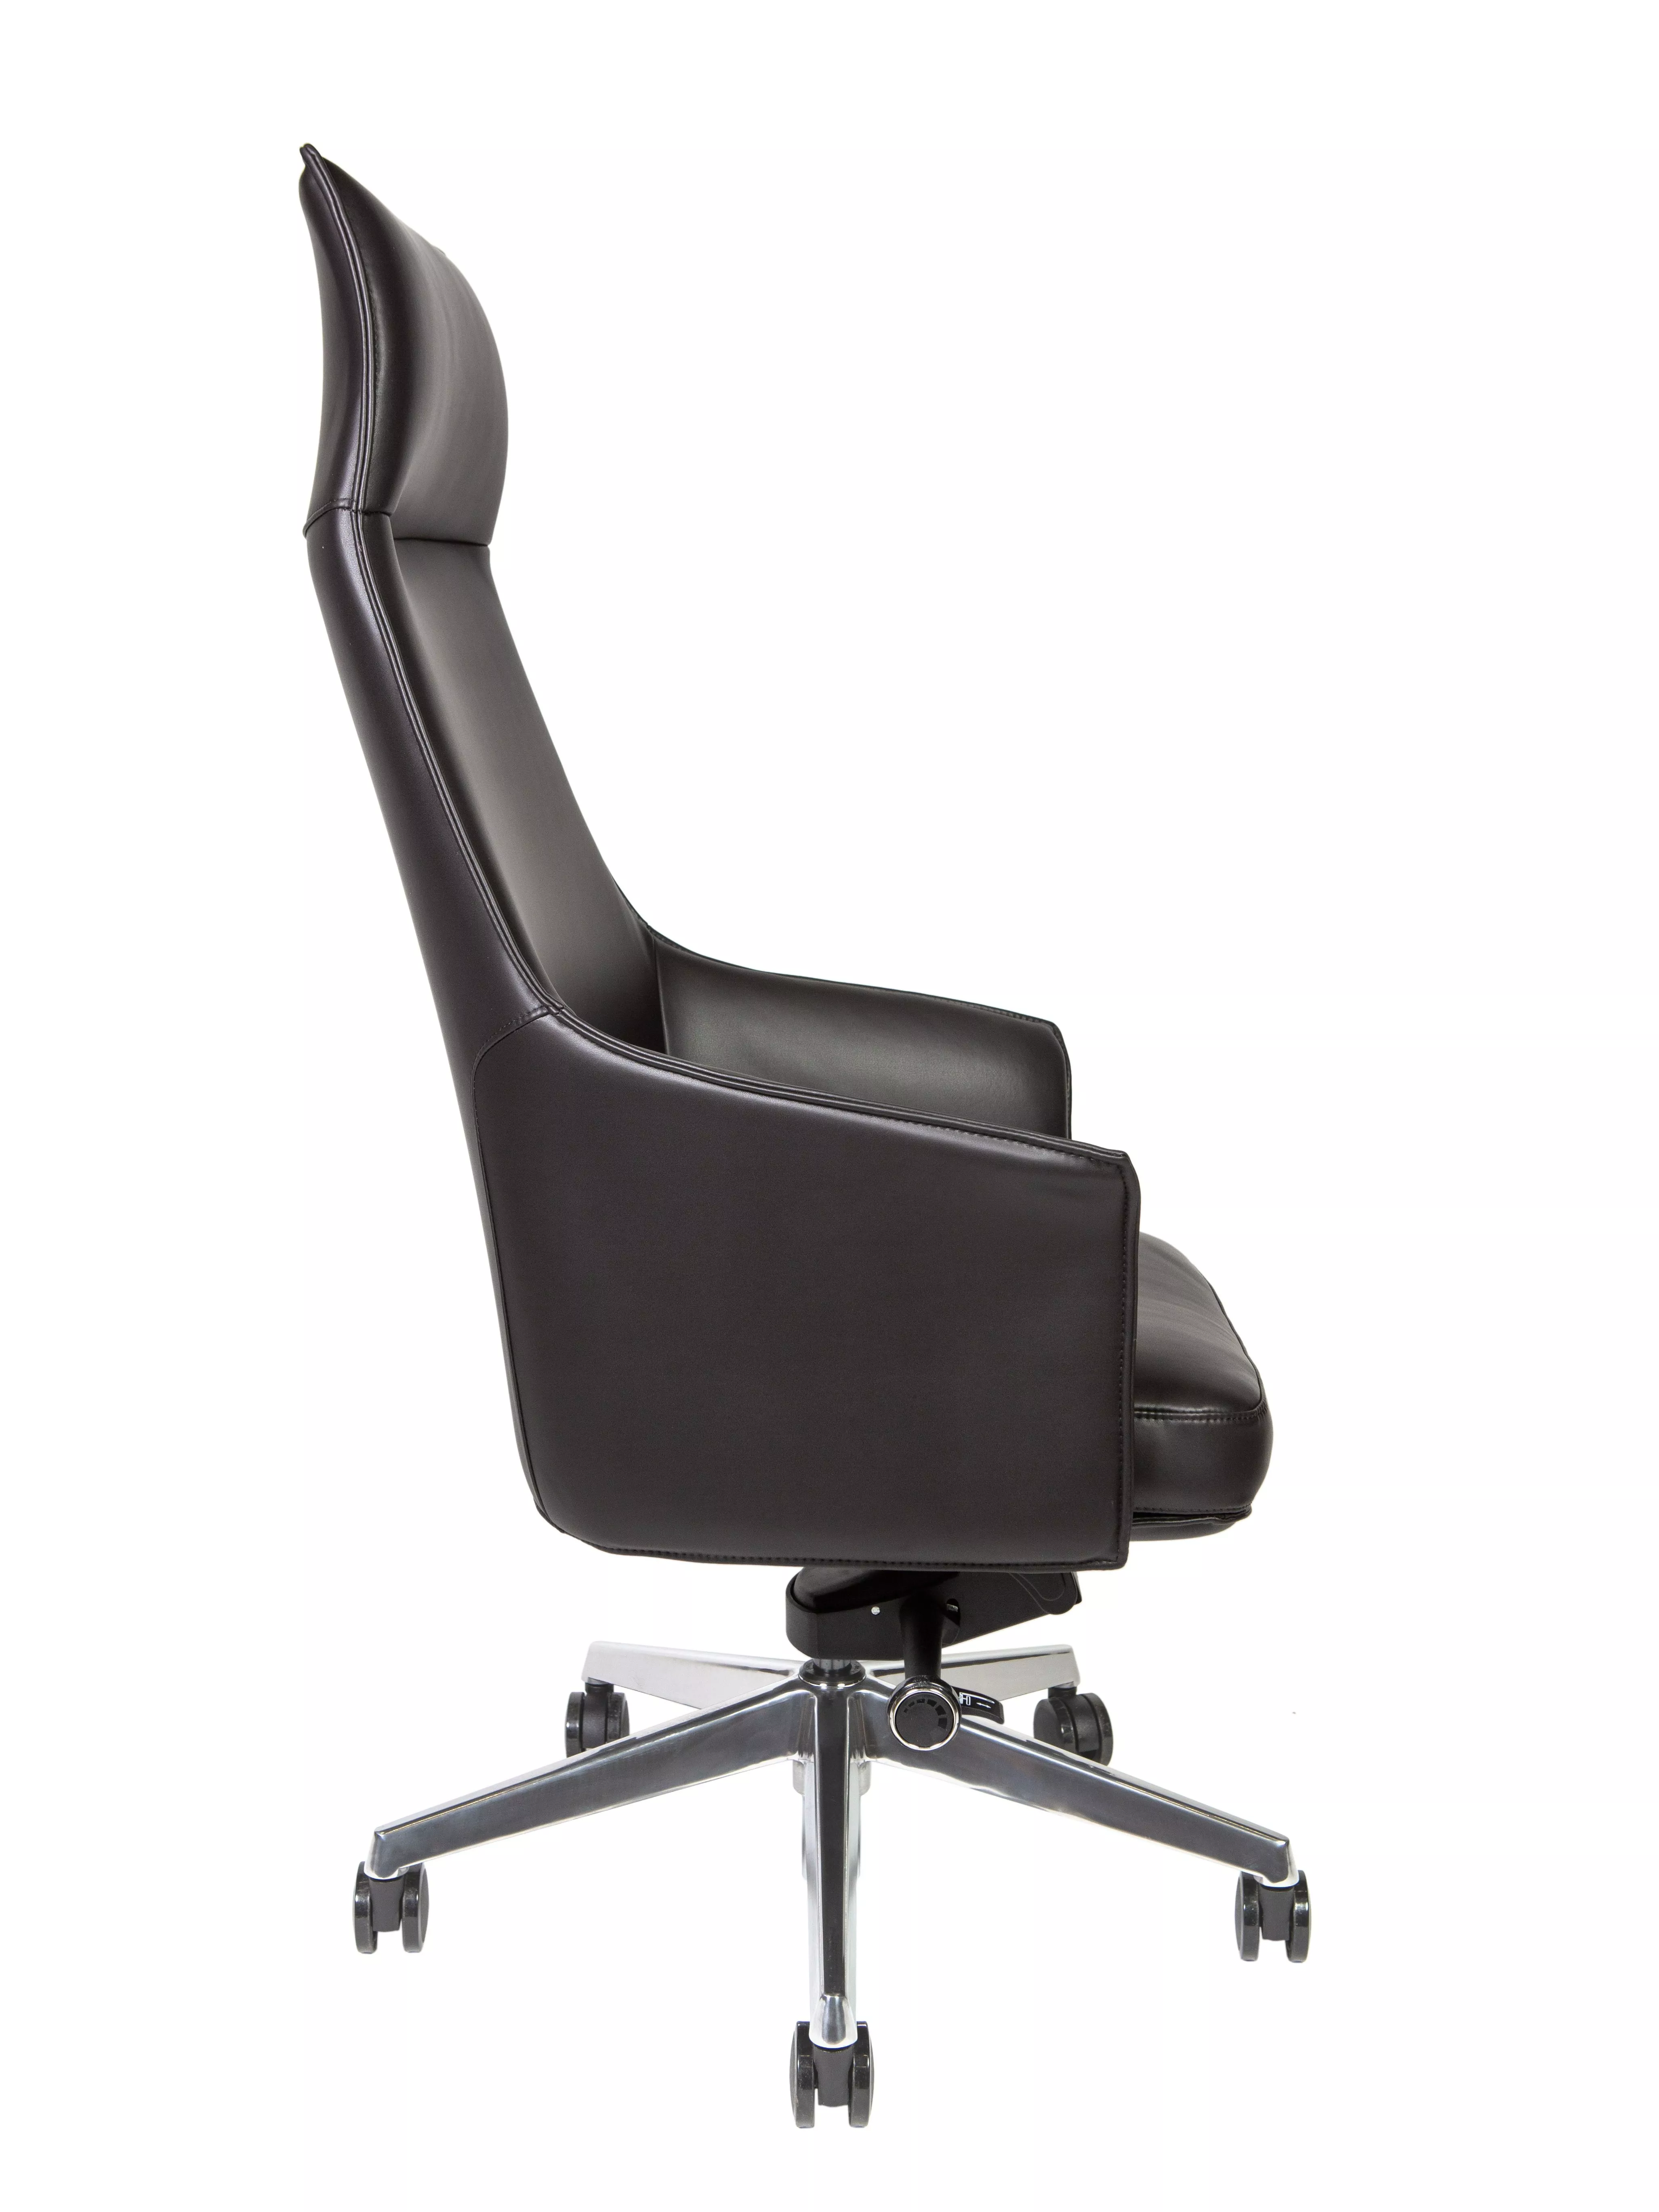 Кресло руководителя Бордо черная кожа A1918 black leather NORDEN